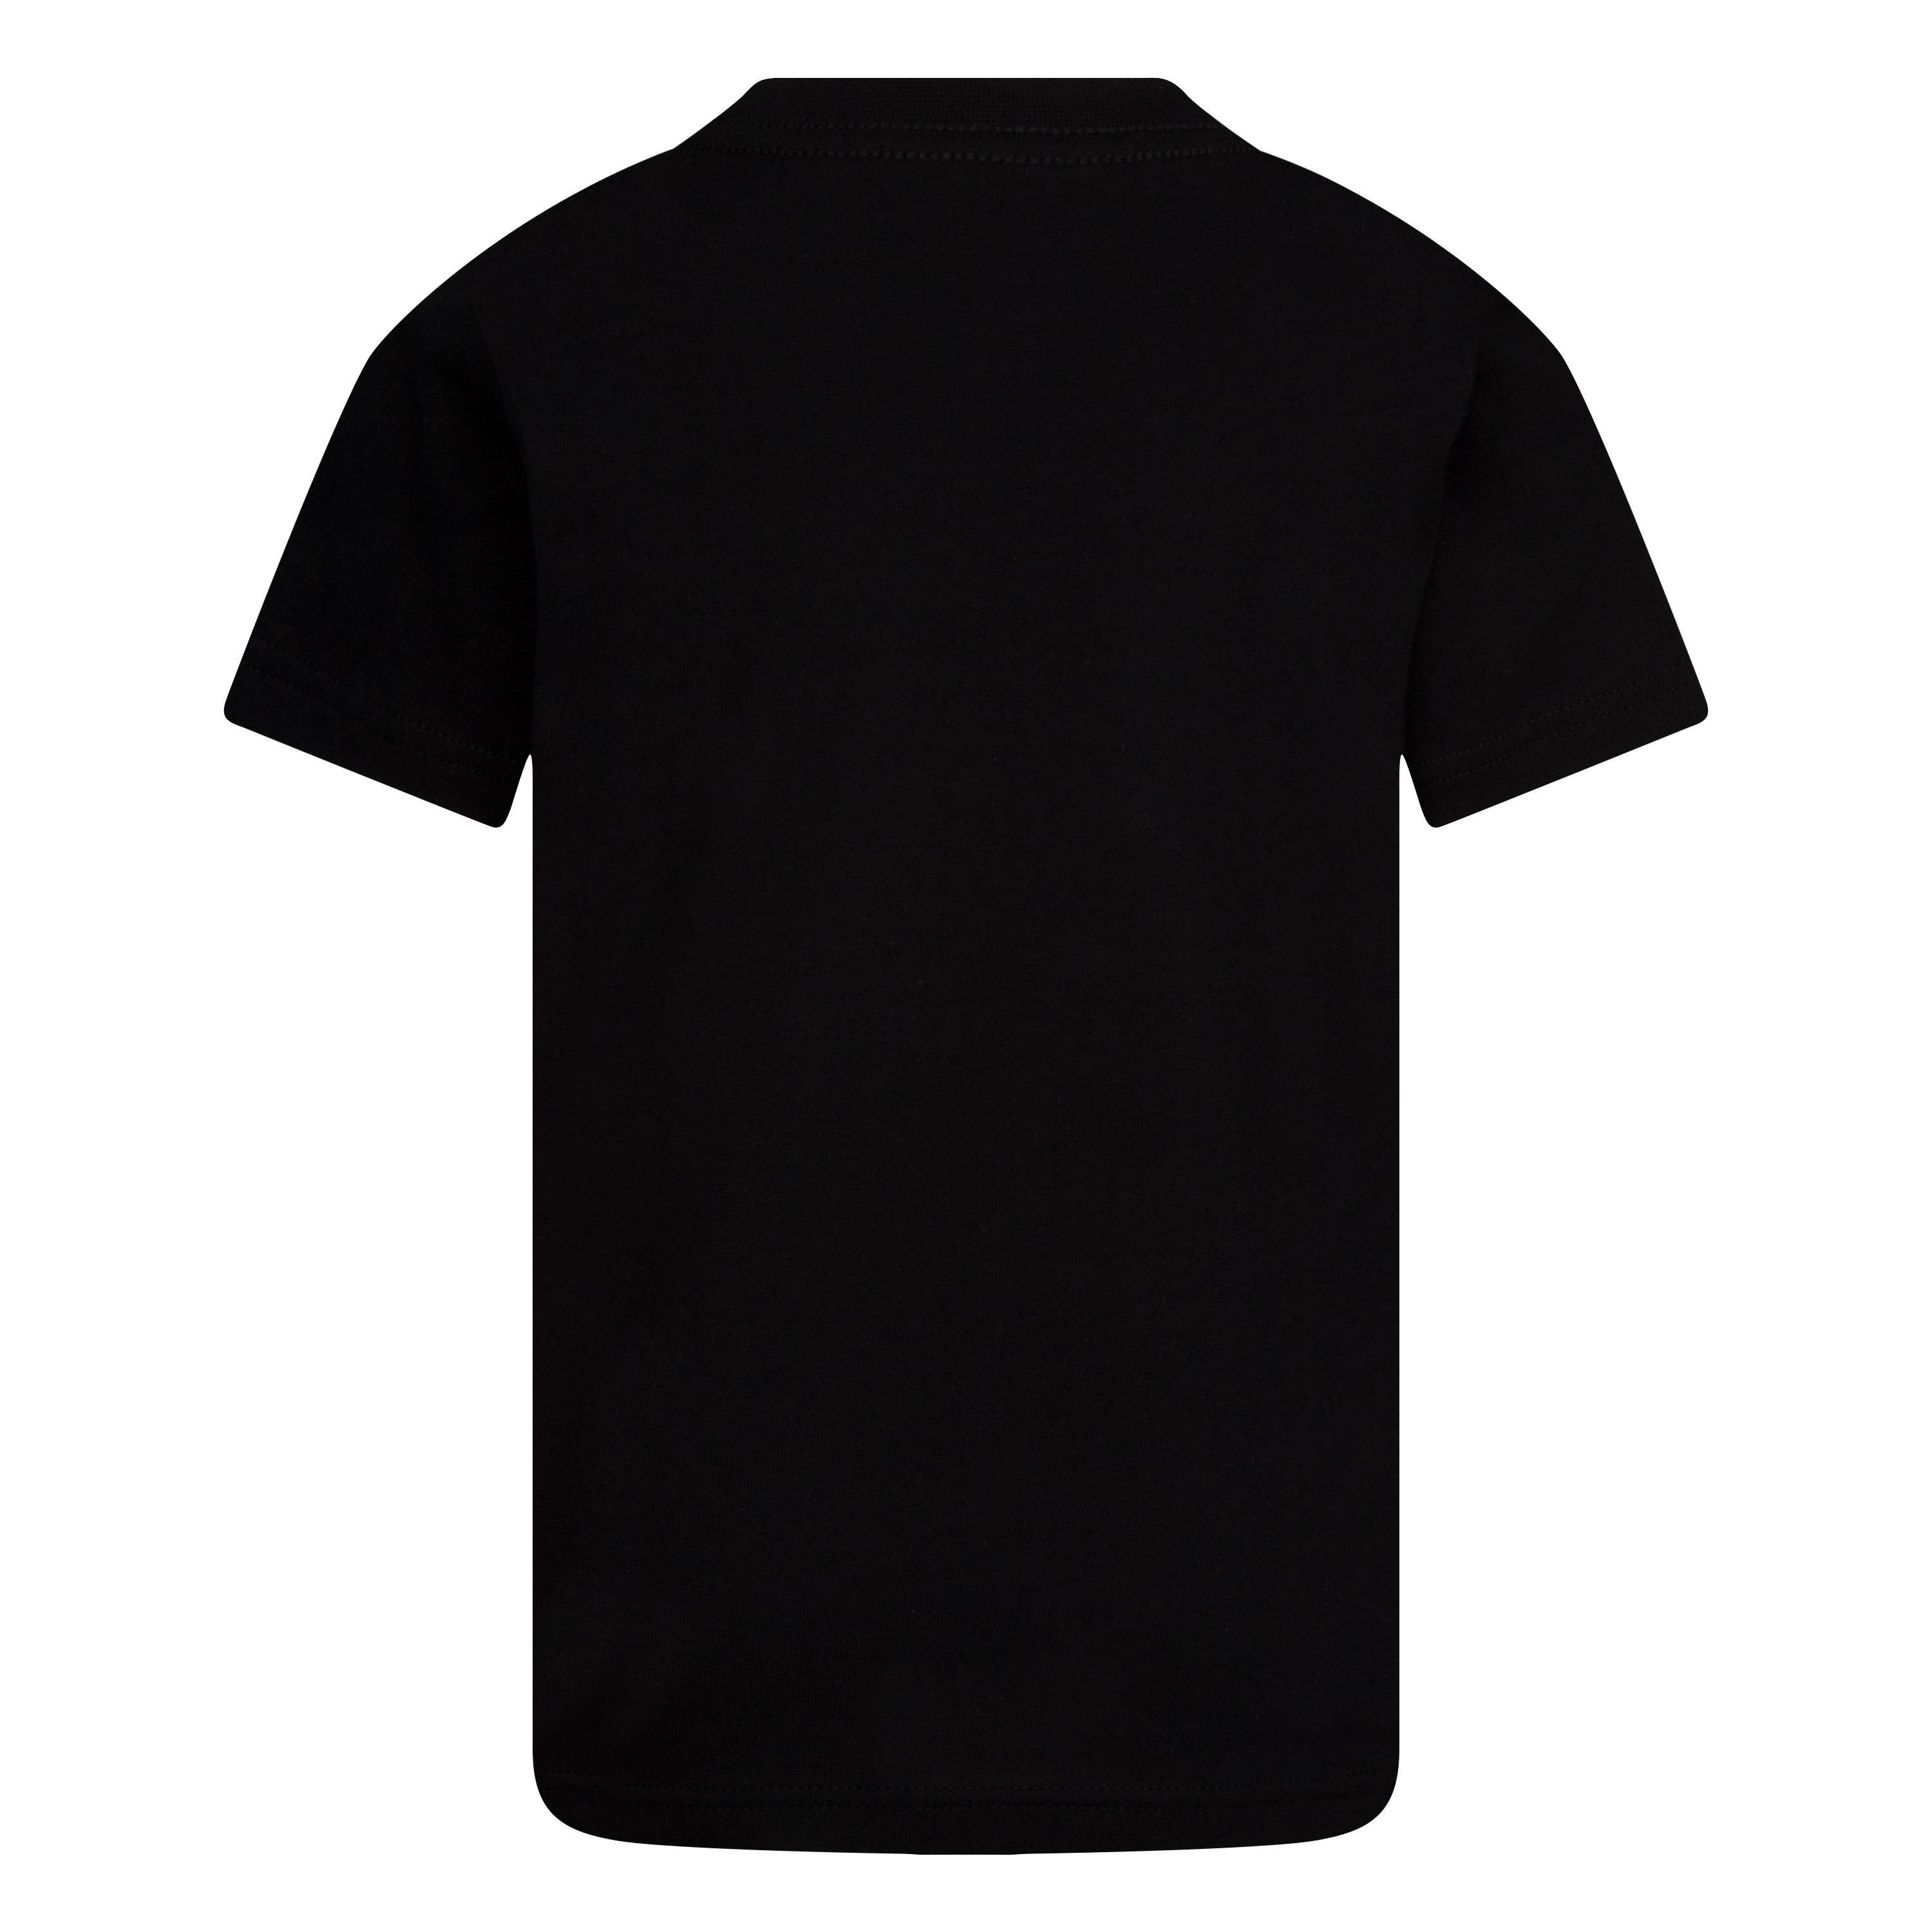 Nike Sportswear T-Shirt NKB SWOOSH Short -Sleeve black TEE JDI Kinder - für